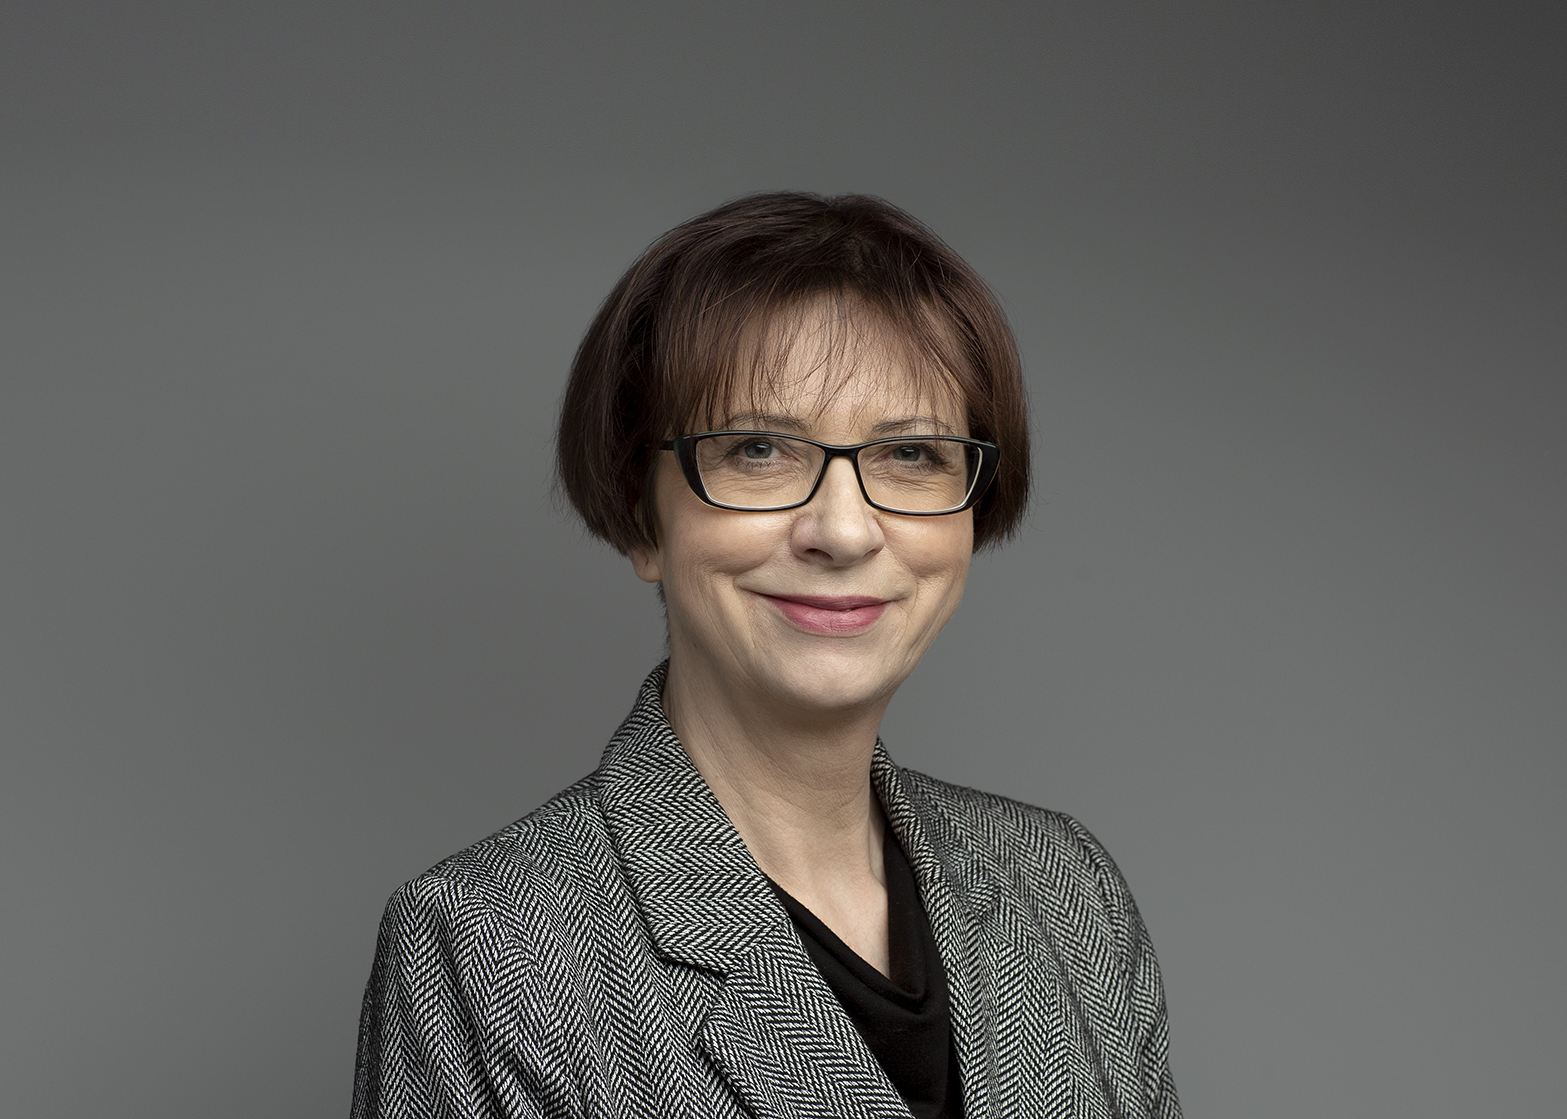 PhDr. Alena Volrábová, PhD.